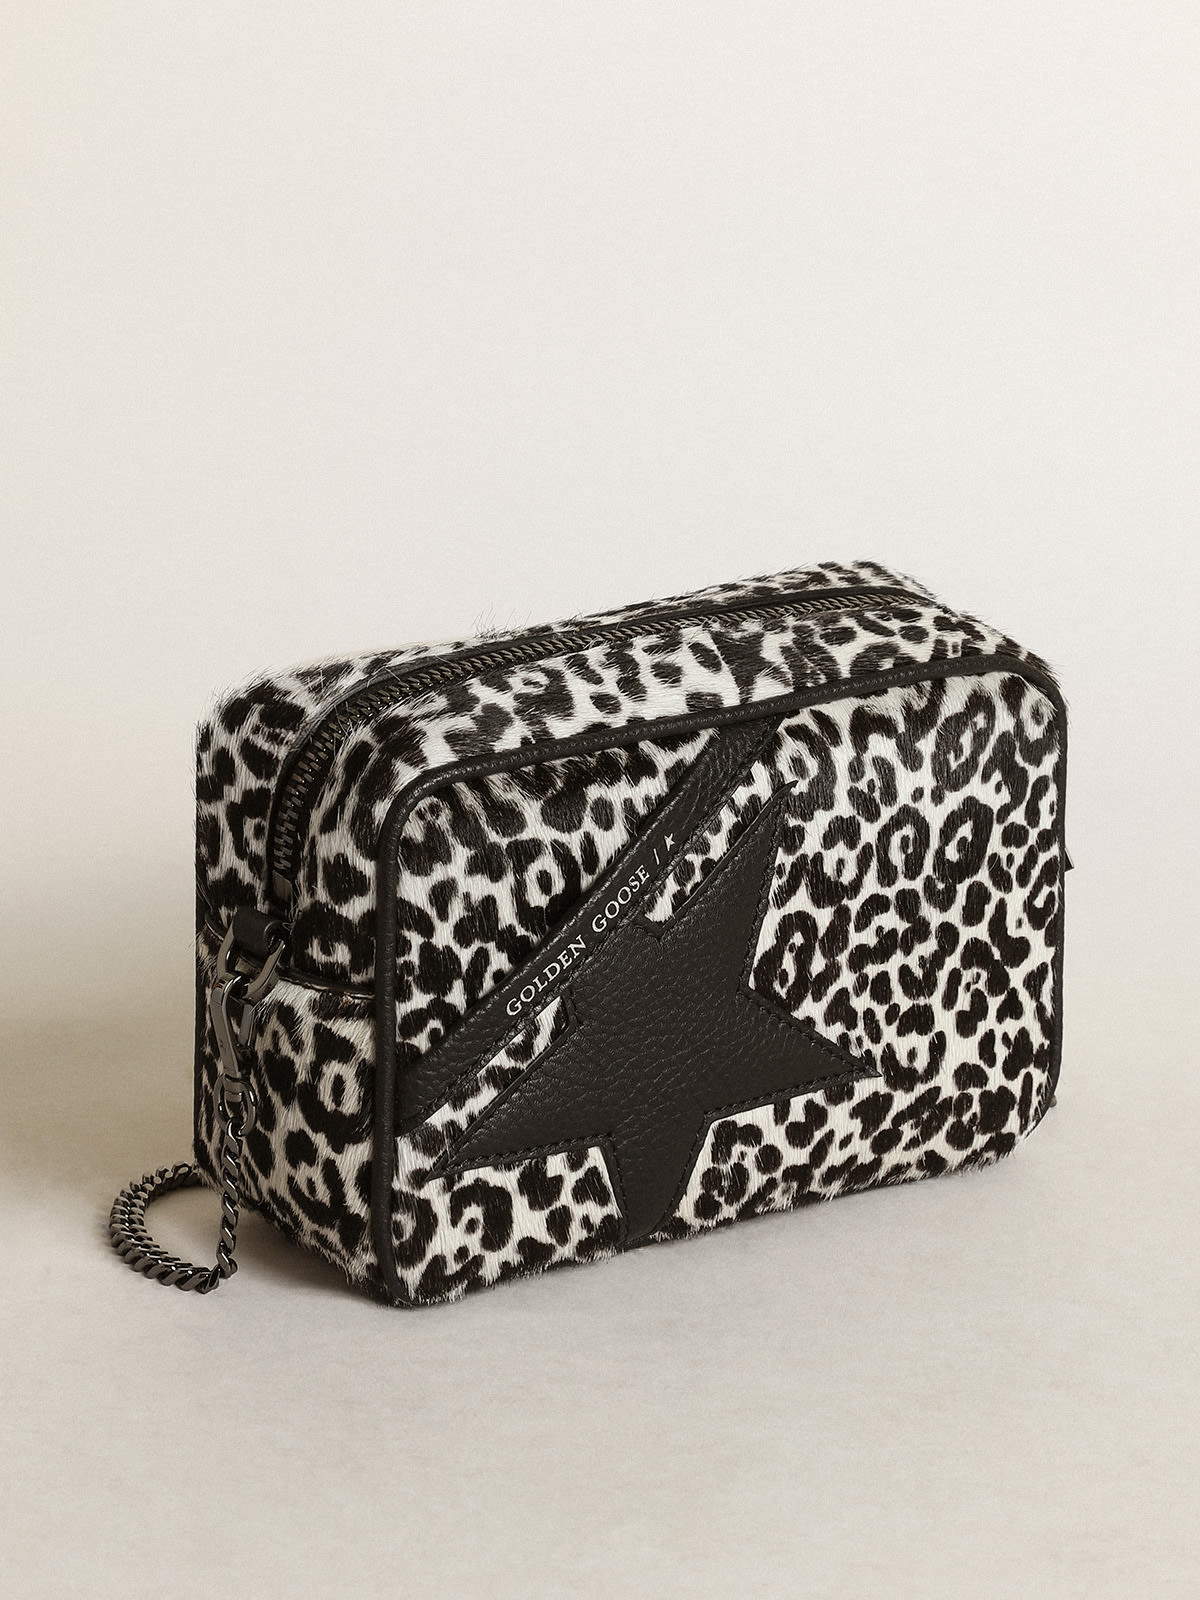 Golden Goose - Borsa Mini Star Bag in cavallino leopardato color bianco e nero con stella in pelle nera in 